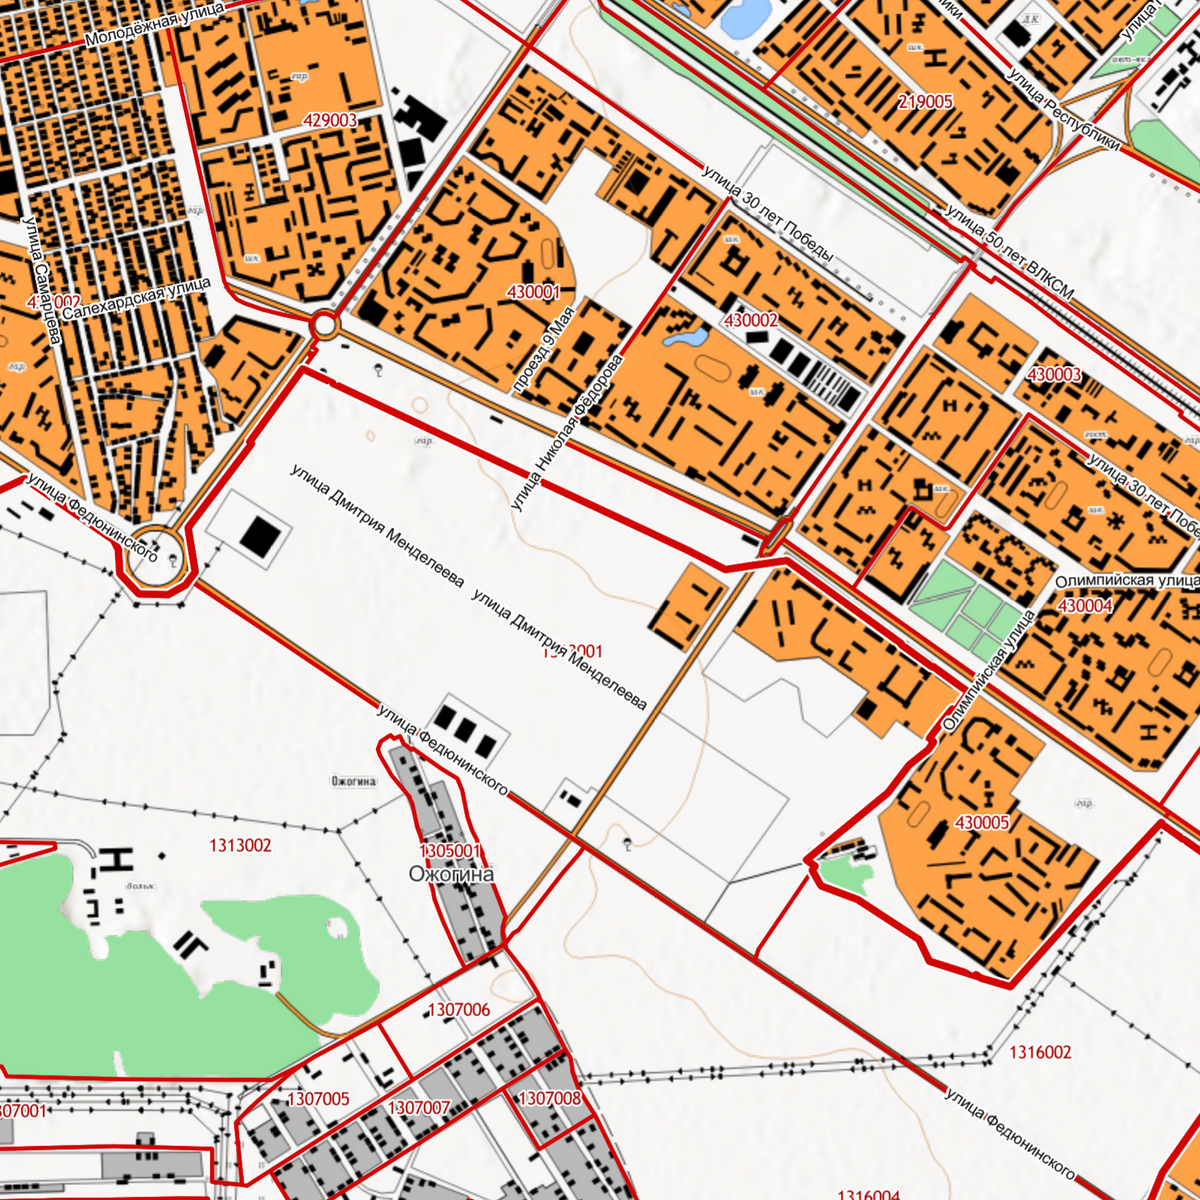 Публичная кадастровая карта Росреестра. Здесь можно увидеть, где расположен квартал из кадастрового номера квартиры, и понять ее местоположение даже без&nbsp;адреса